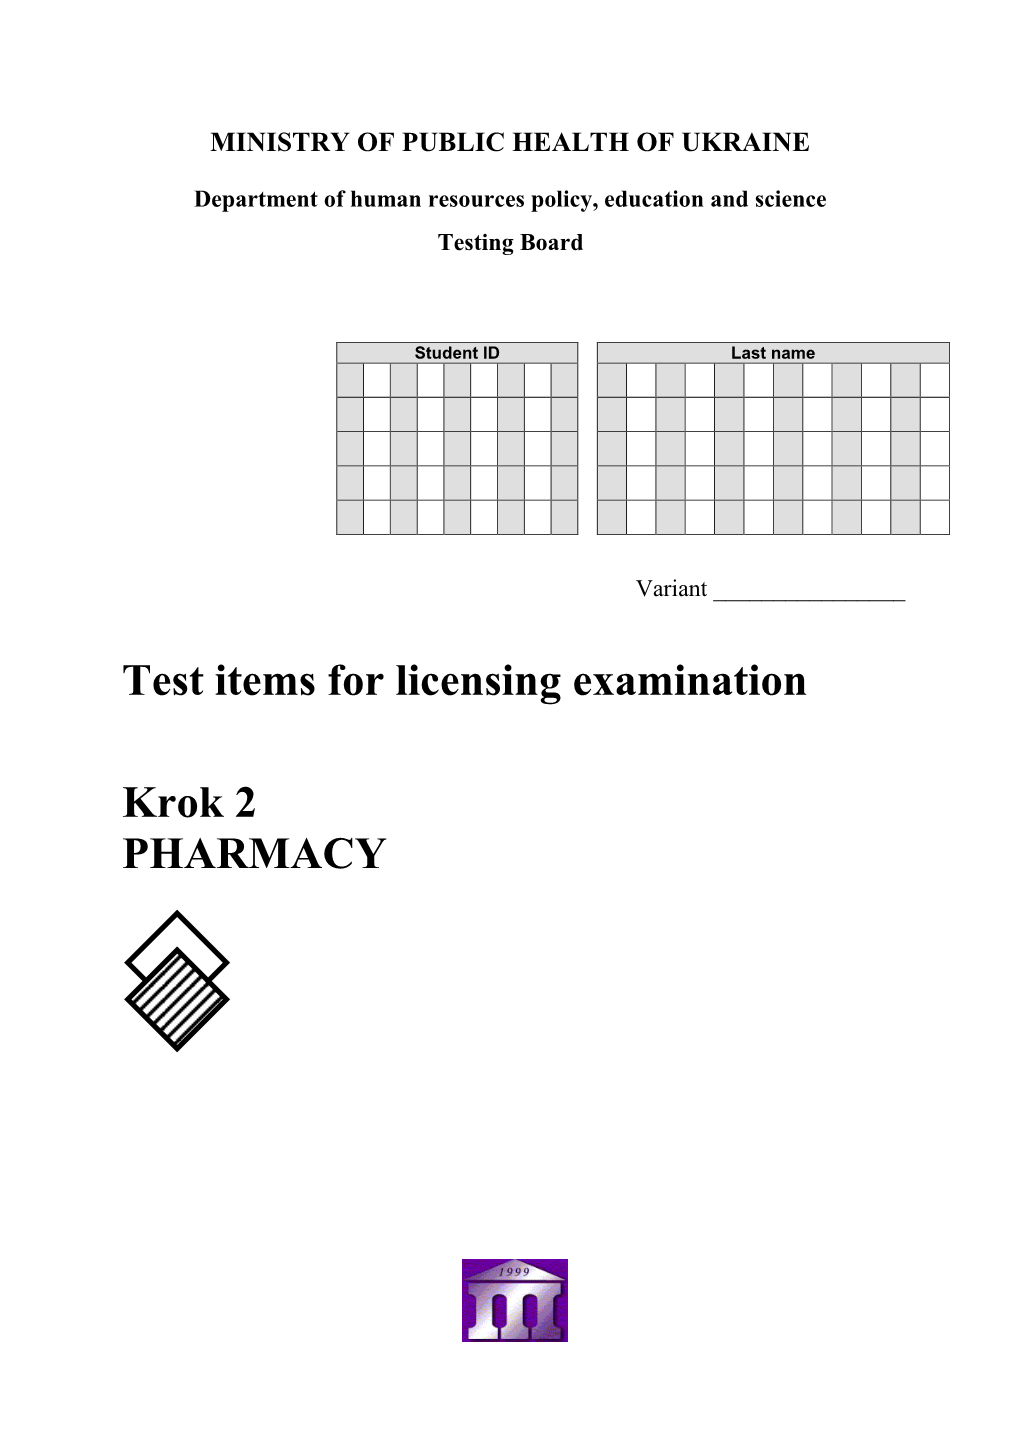 Test Items for Licensing Examination Krok 2 PHARMACY